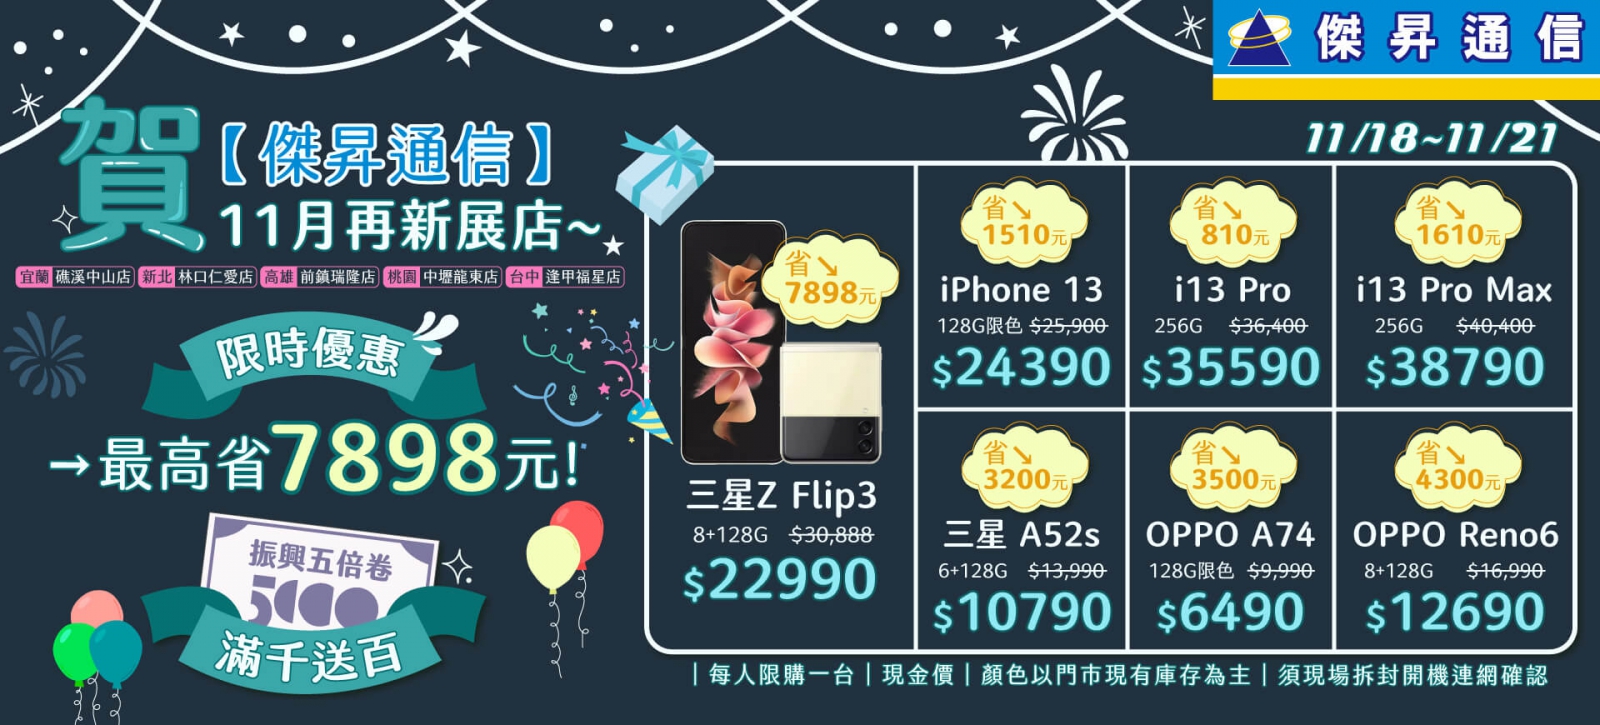 傑昇店數破百!三星Galaxy Z Flip3不用2萬3 還送原廠指環套